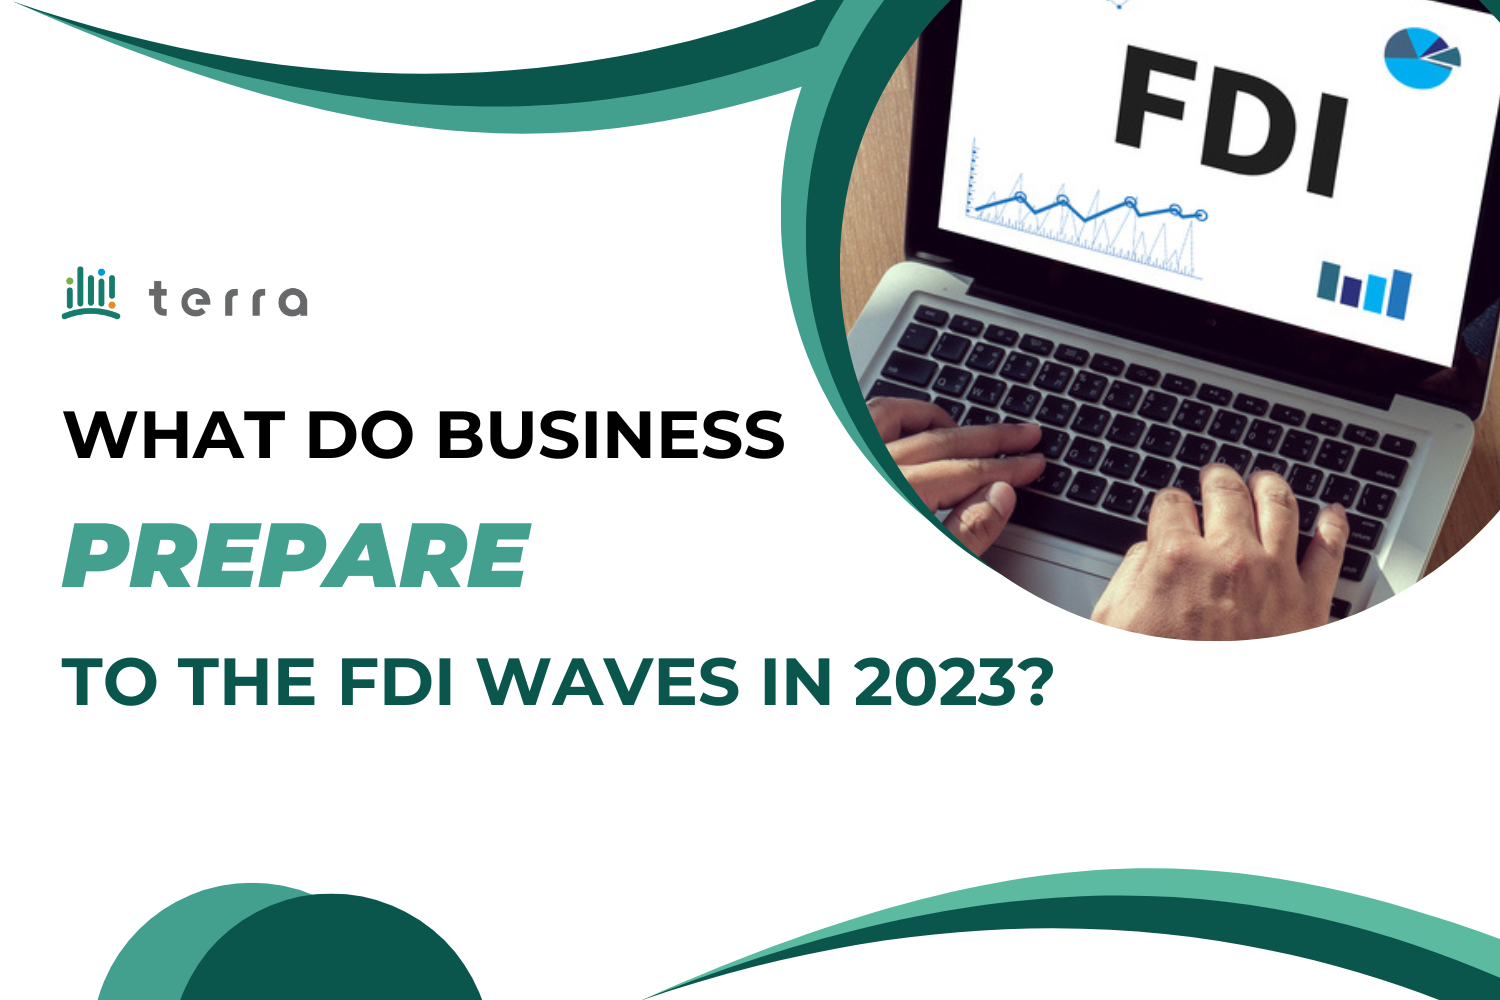 Doanh nghiệp “trang bị” gì để đón sóng FDI trong năm 2023?